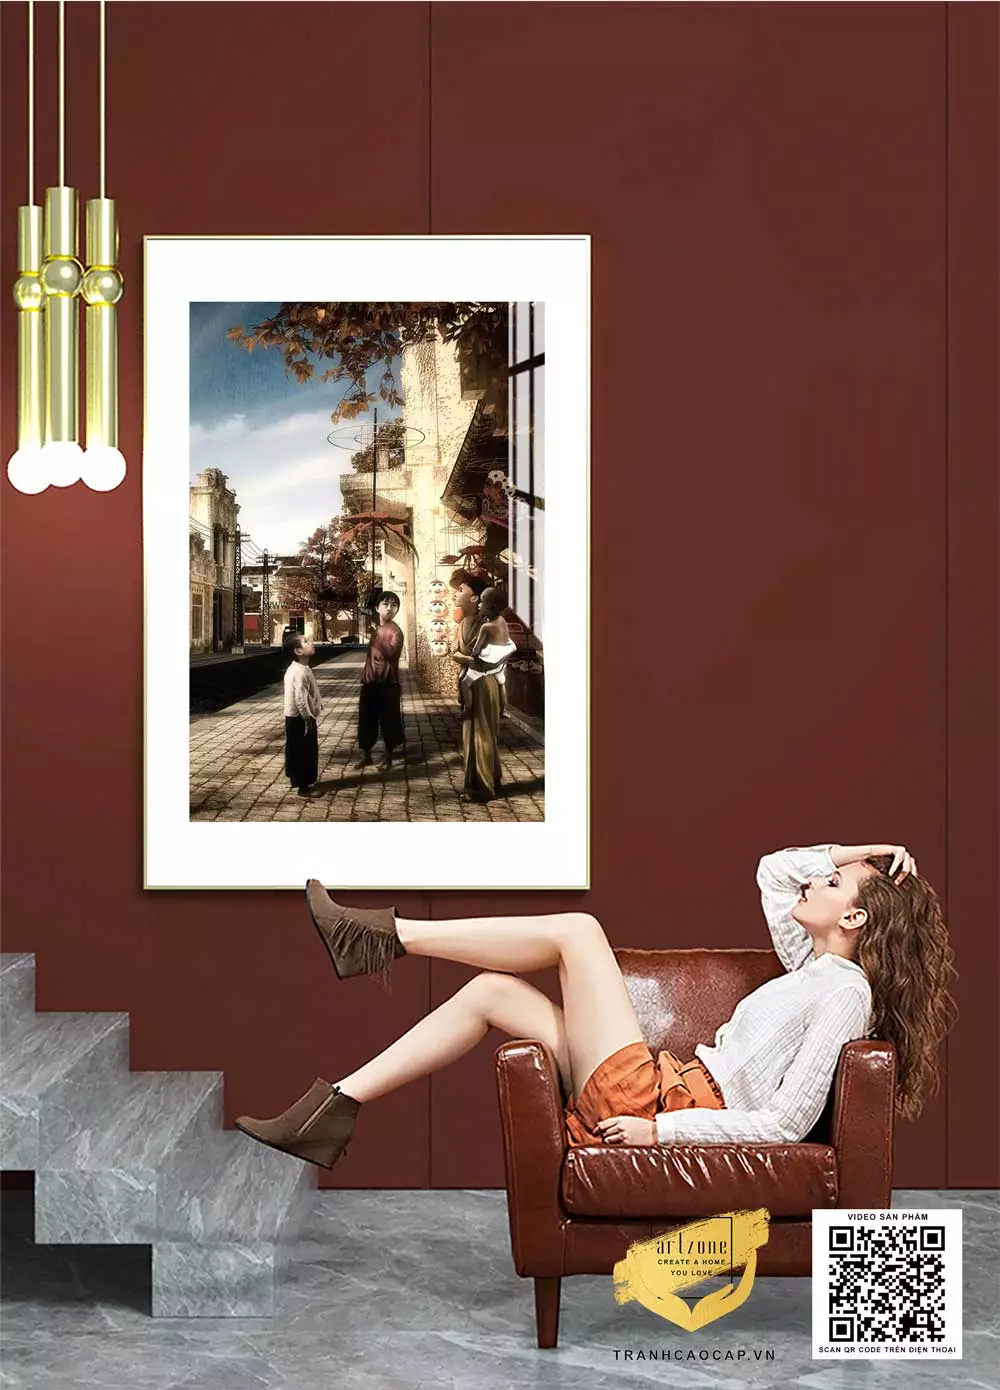 Nội dung Tranh Decor cổ điển Mica trang trí phòng khách Hà Nội xưa Tranh Decor cổ điển Mica trang trí phòng khách Hà Nội xưa 40*60 cm P/N: AZ1-0925-KC5-MICA-40X60